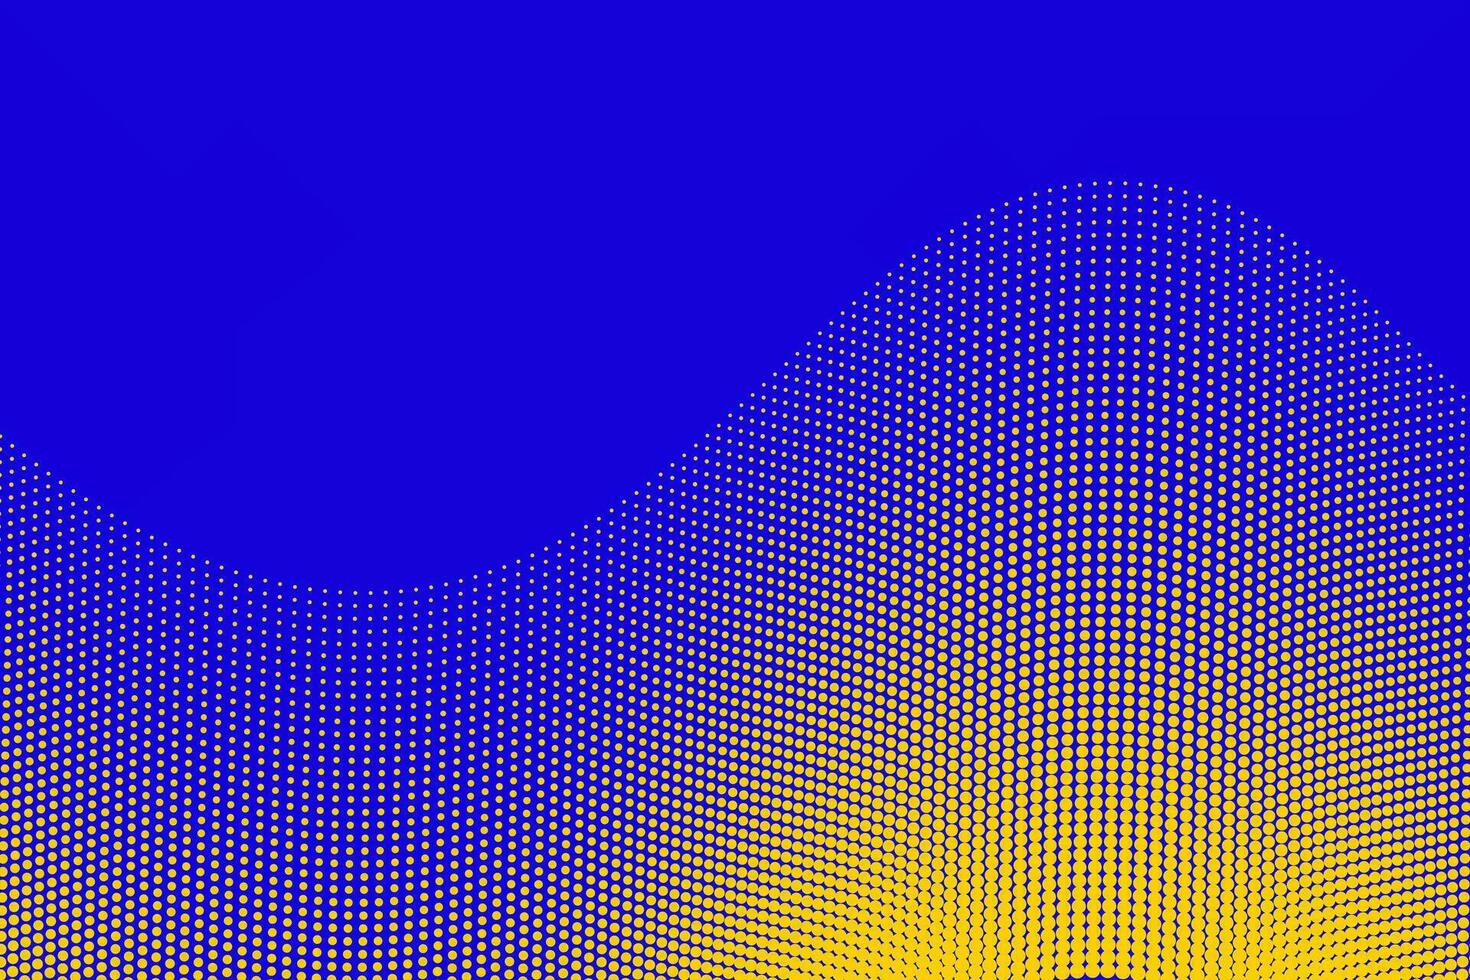 azul e amarelo, ondulado pontos, meio-tom textura, pop arte quadrinho livro projeto, abstrato fundo vetor